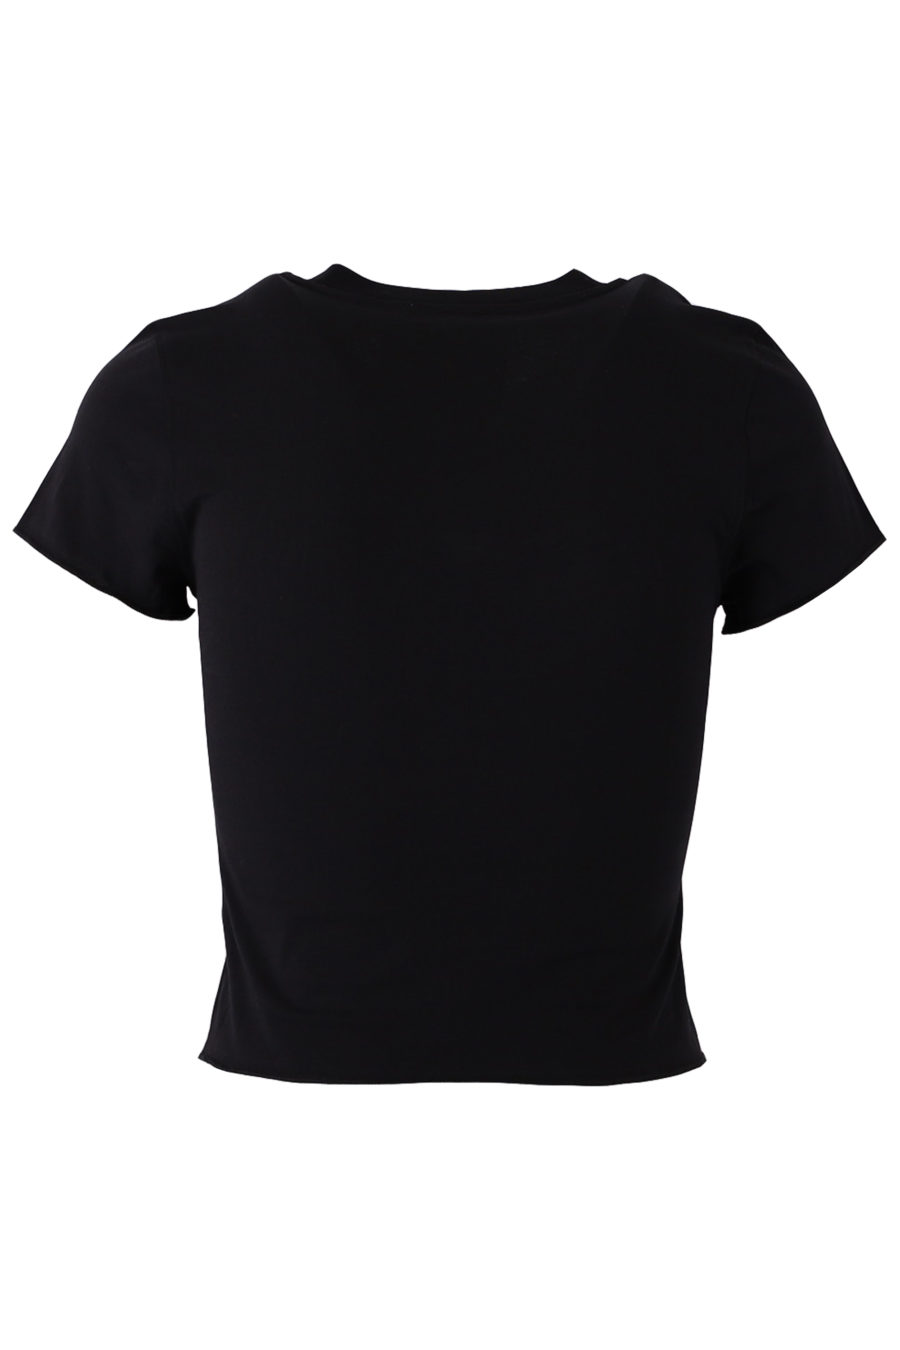 Camiseta corta de color negro con logo brillante - 9882cb718f07f214f4fe264c4372cbfa4ff0f898